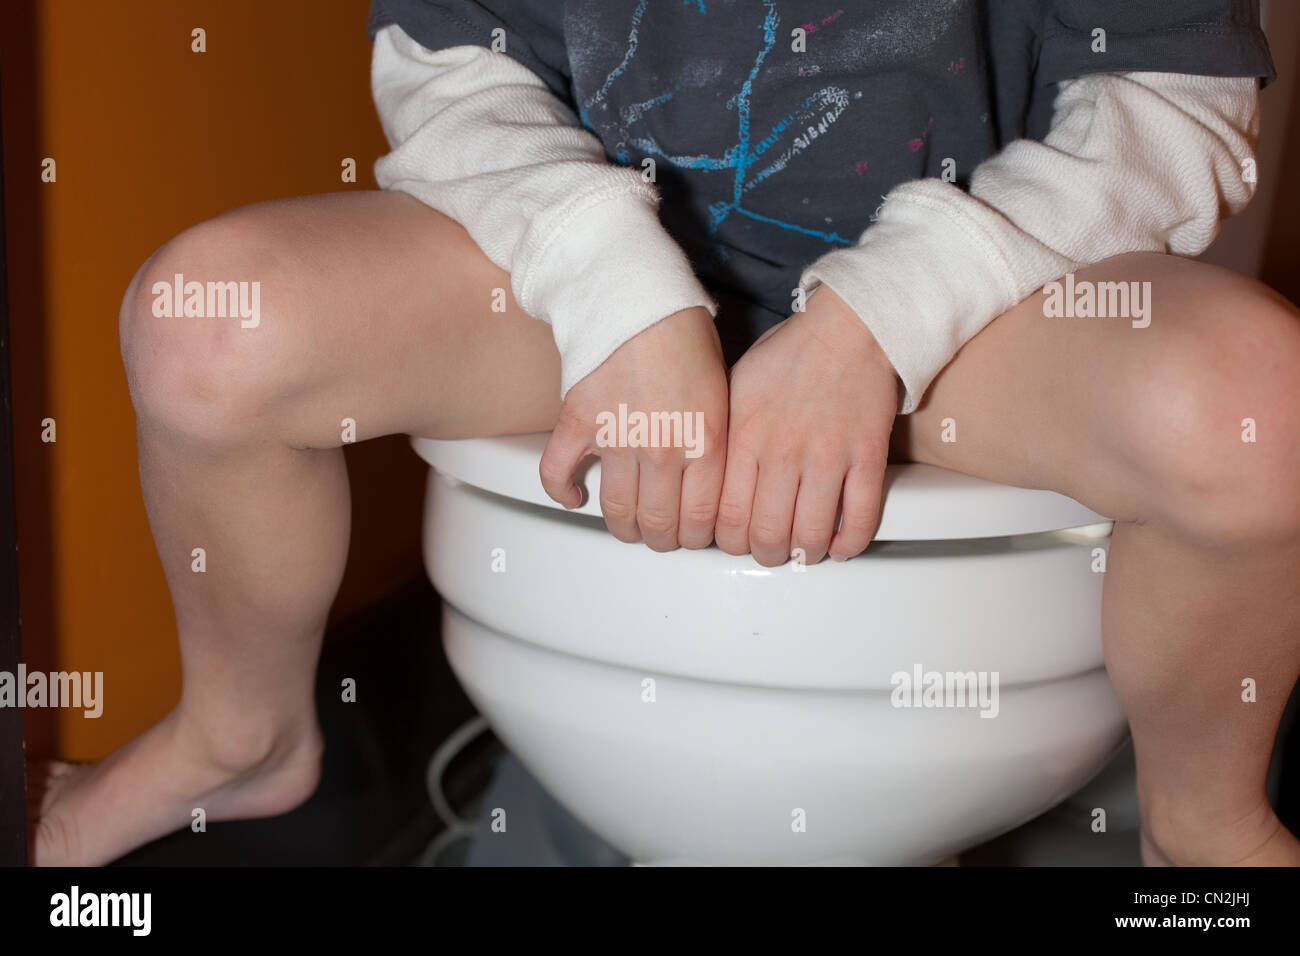 Boy sitting on toilet Stock Photo